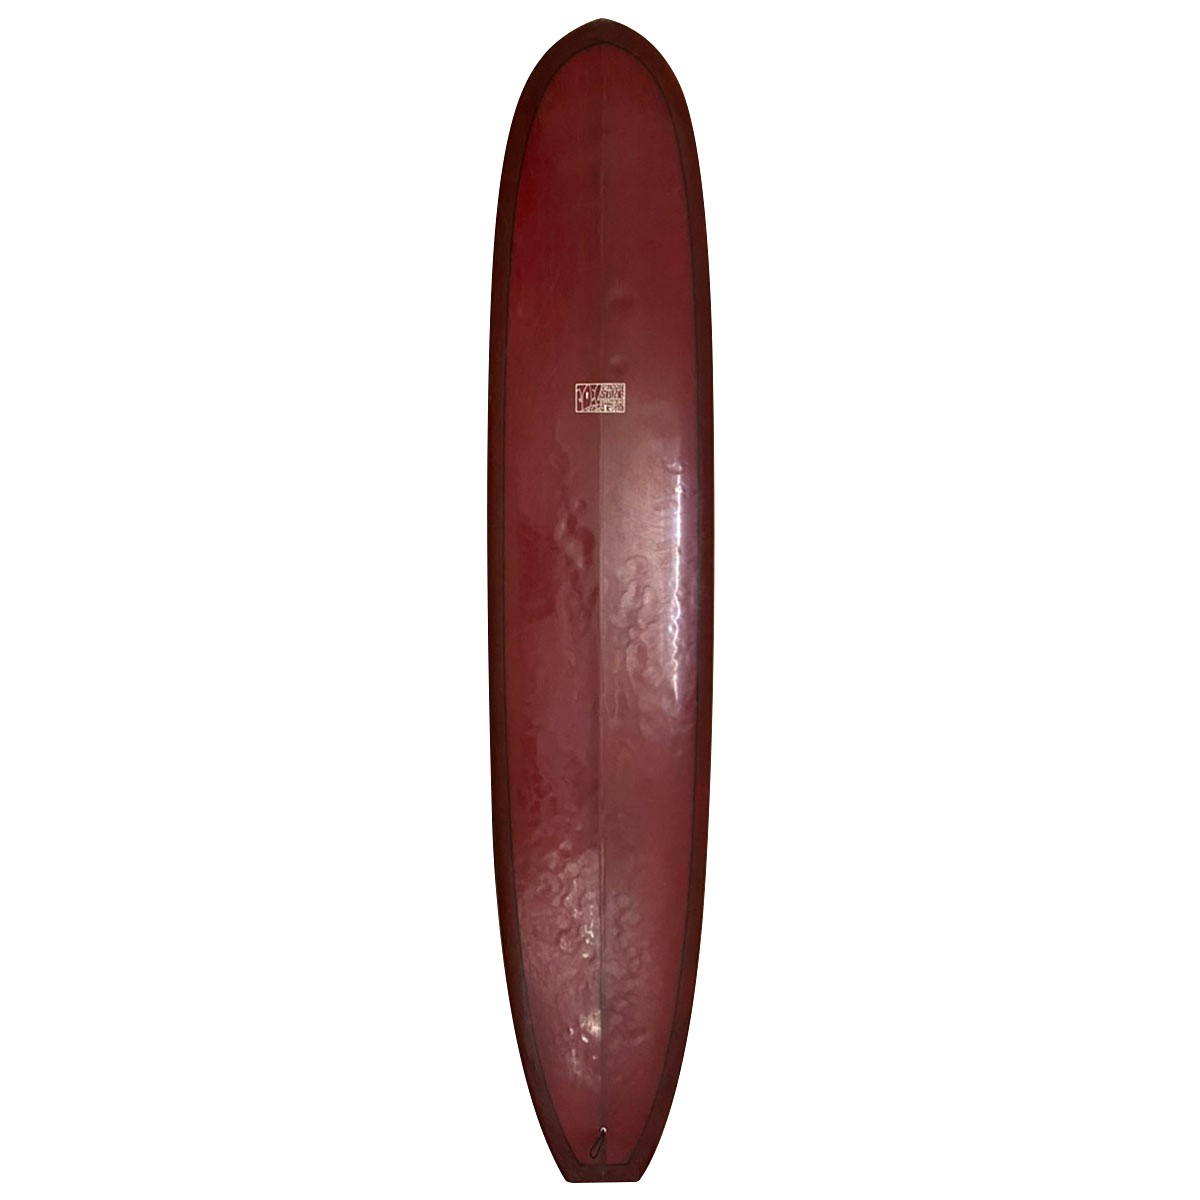 JOEL TUDOR SURFBOARD / JOEL TUDOR SURFBOARD / Shaped by Bill Shrosbee 9`6